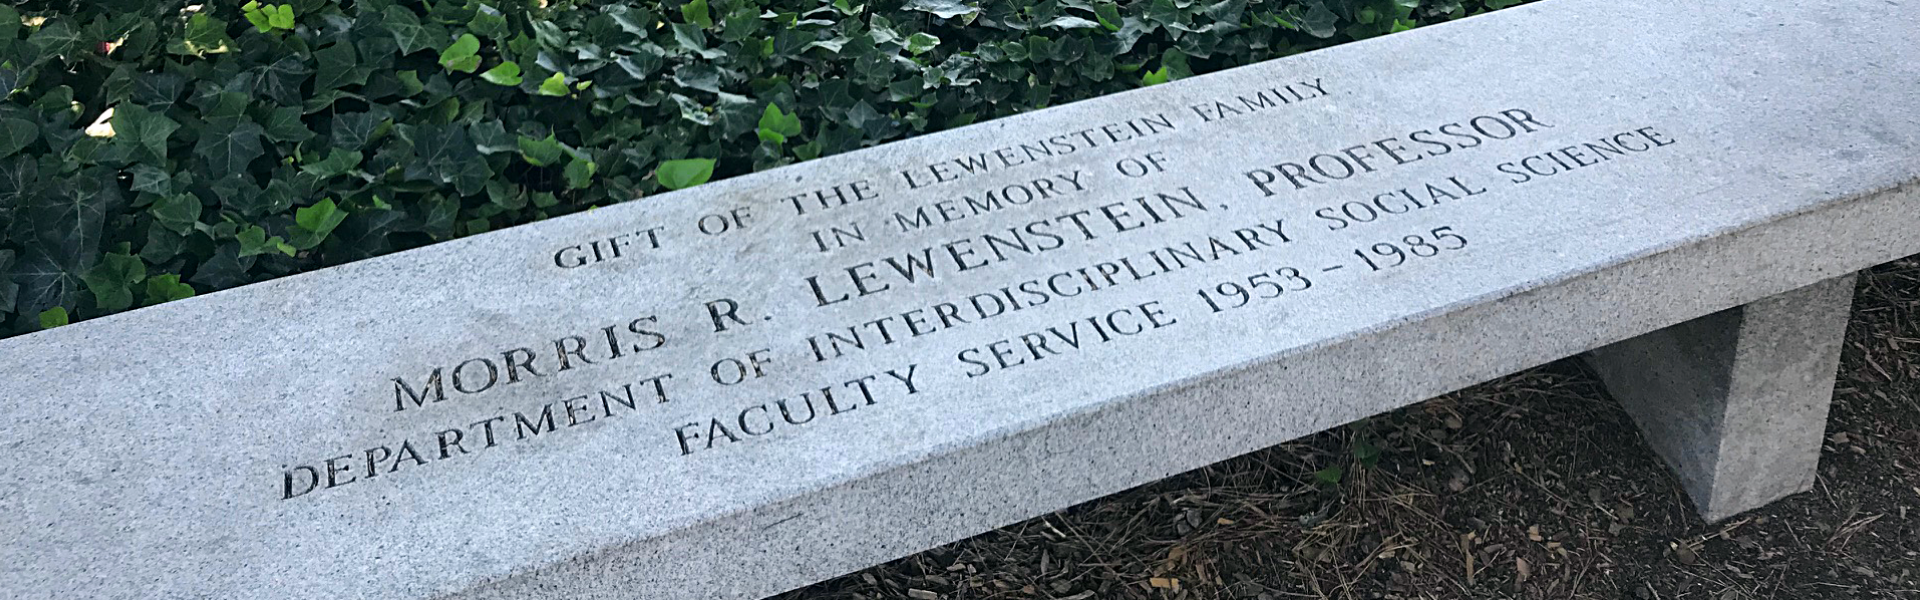 Bench commemorating Professor Lewenstein